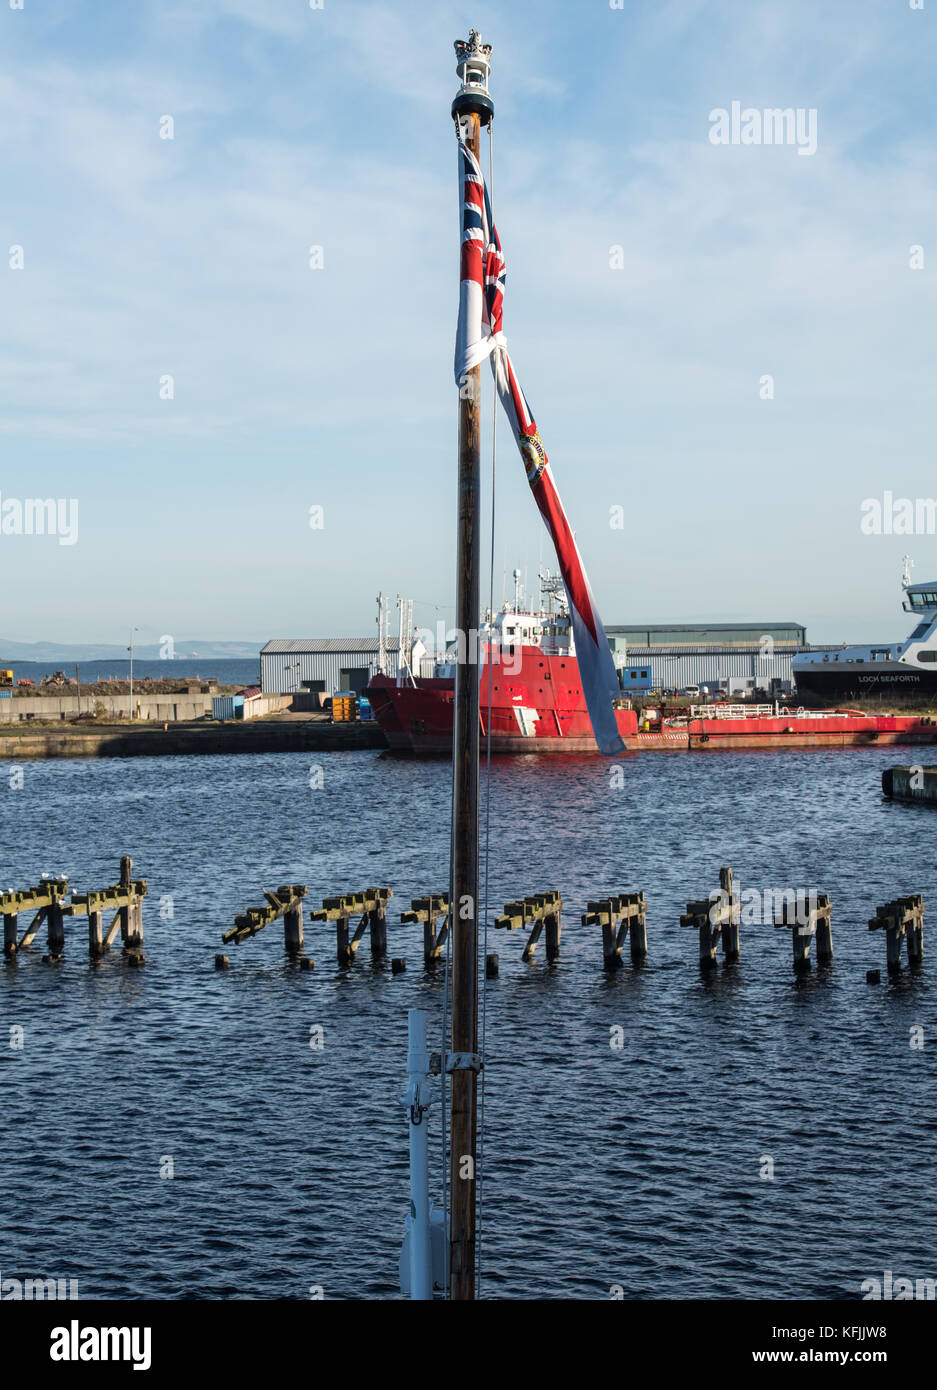 Edinburgh, Scotland, The Royal Yacht Britannia at Ocean Terminal, Leith, Edinburgh, The flagpole looking across Leith docks Stock Photo